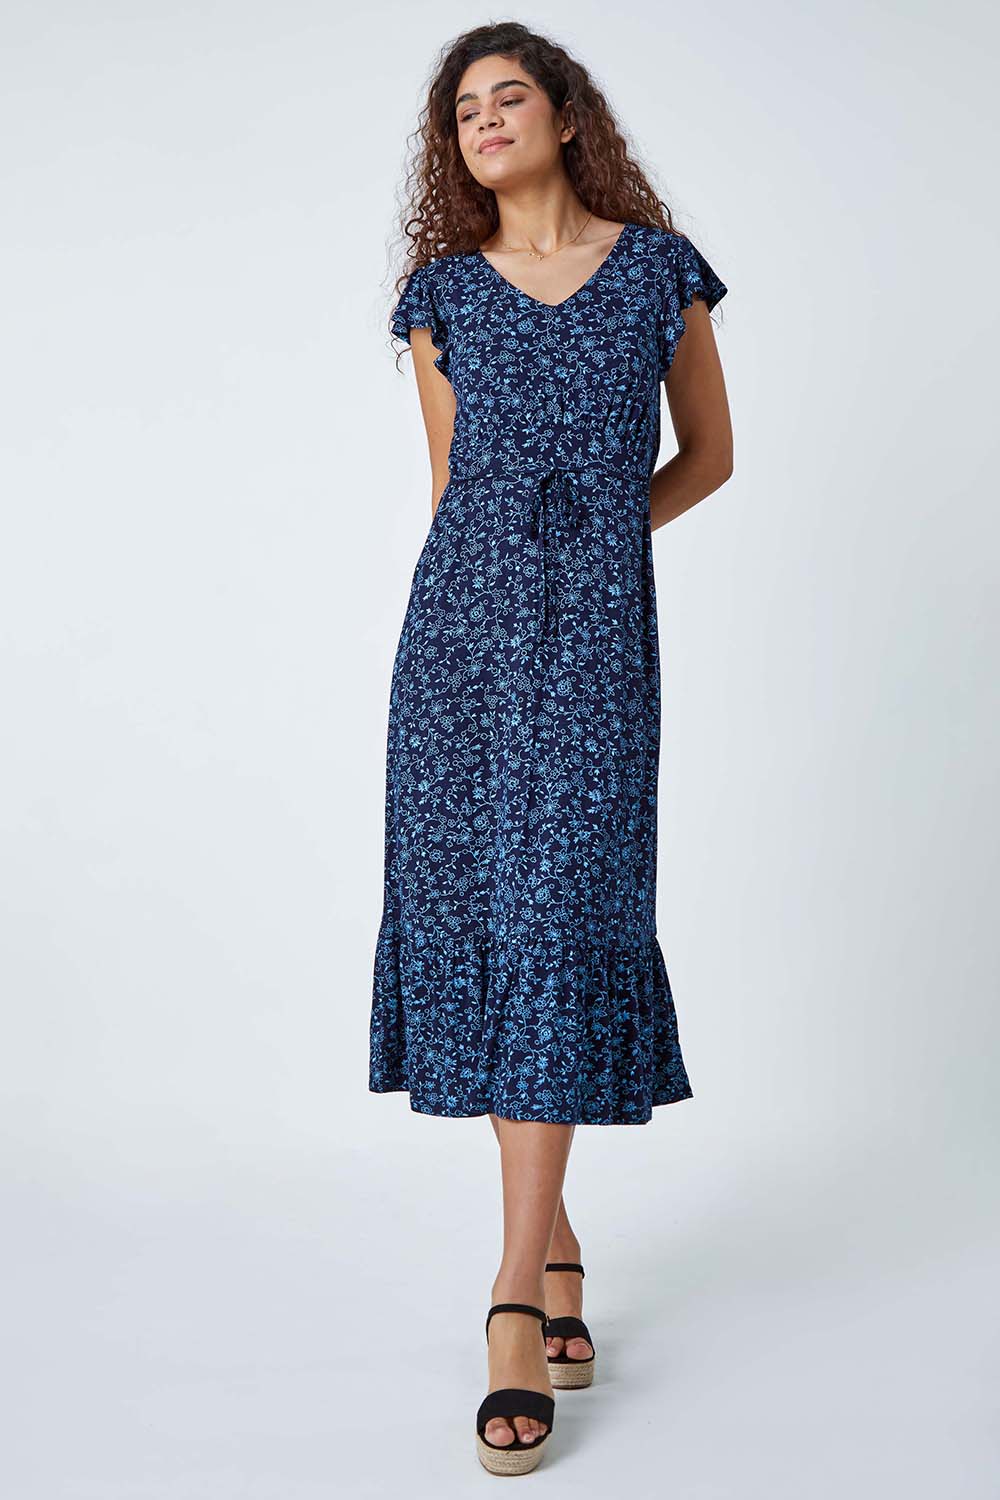 Blue Floral Print Frill Midi Stretch Dress | Roman UK